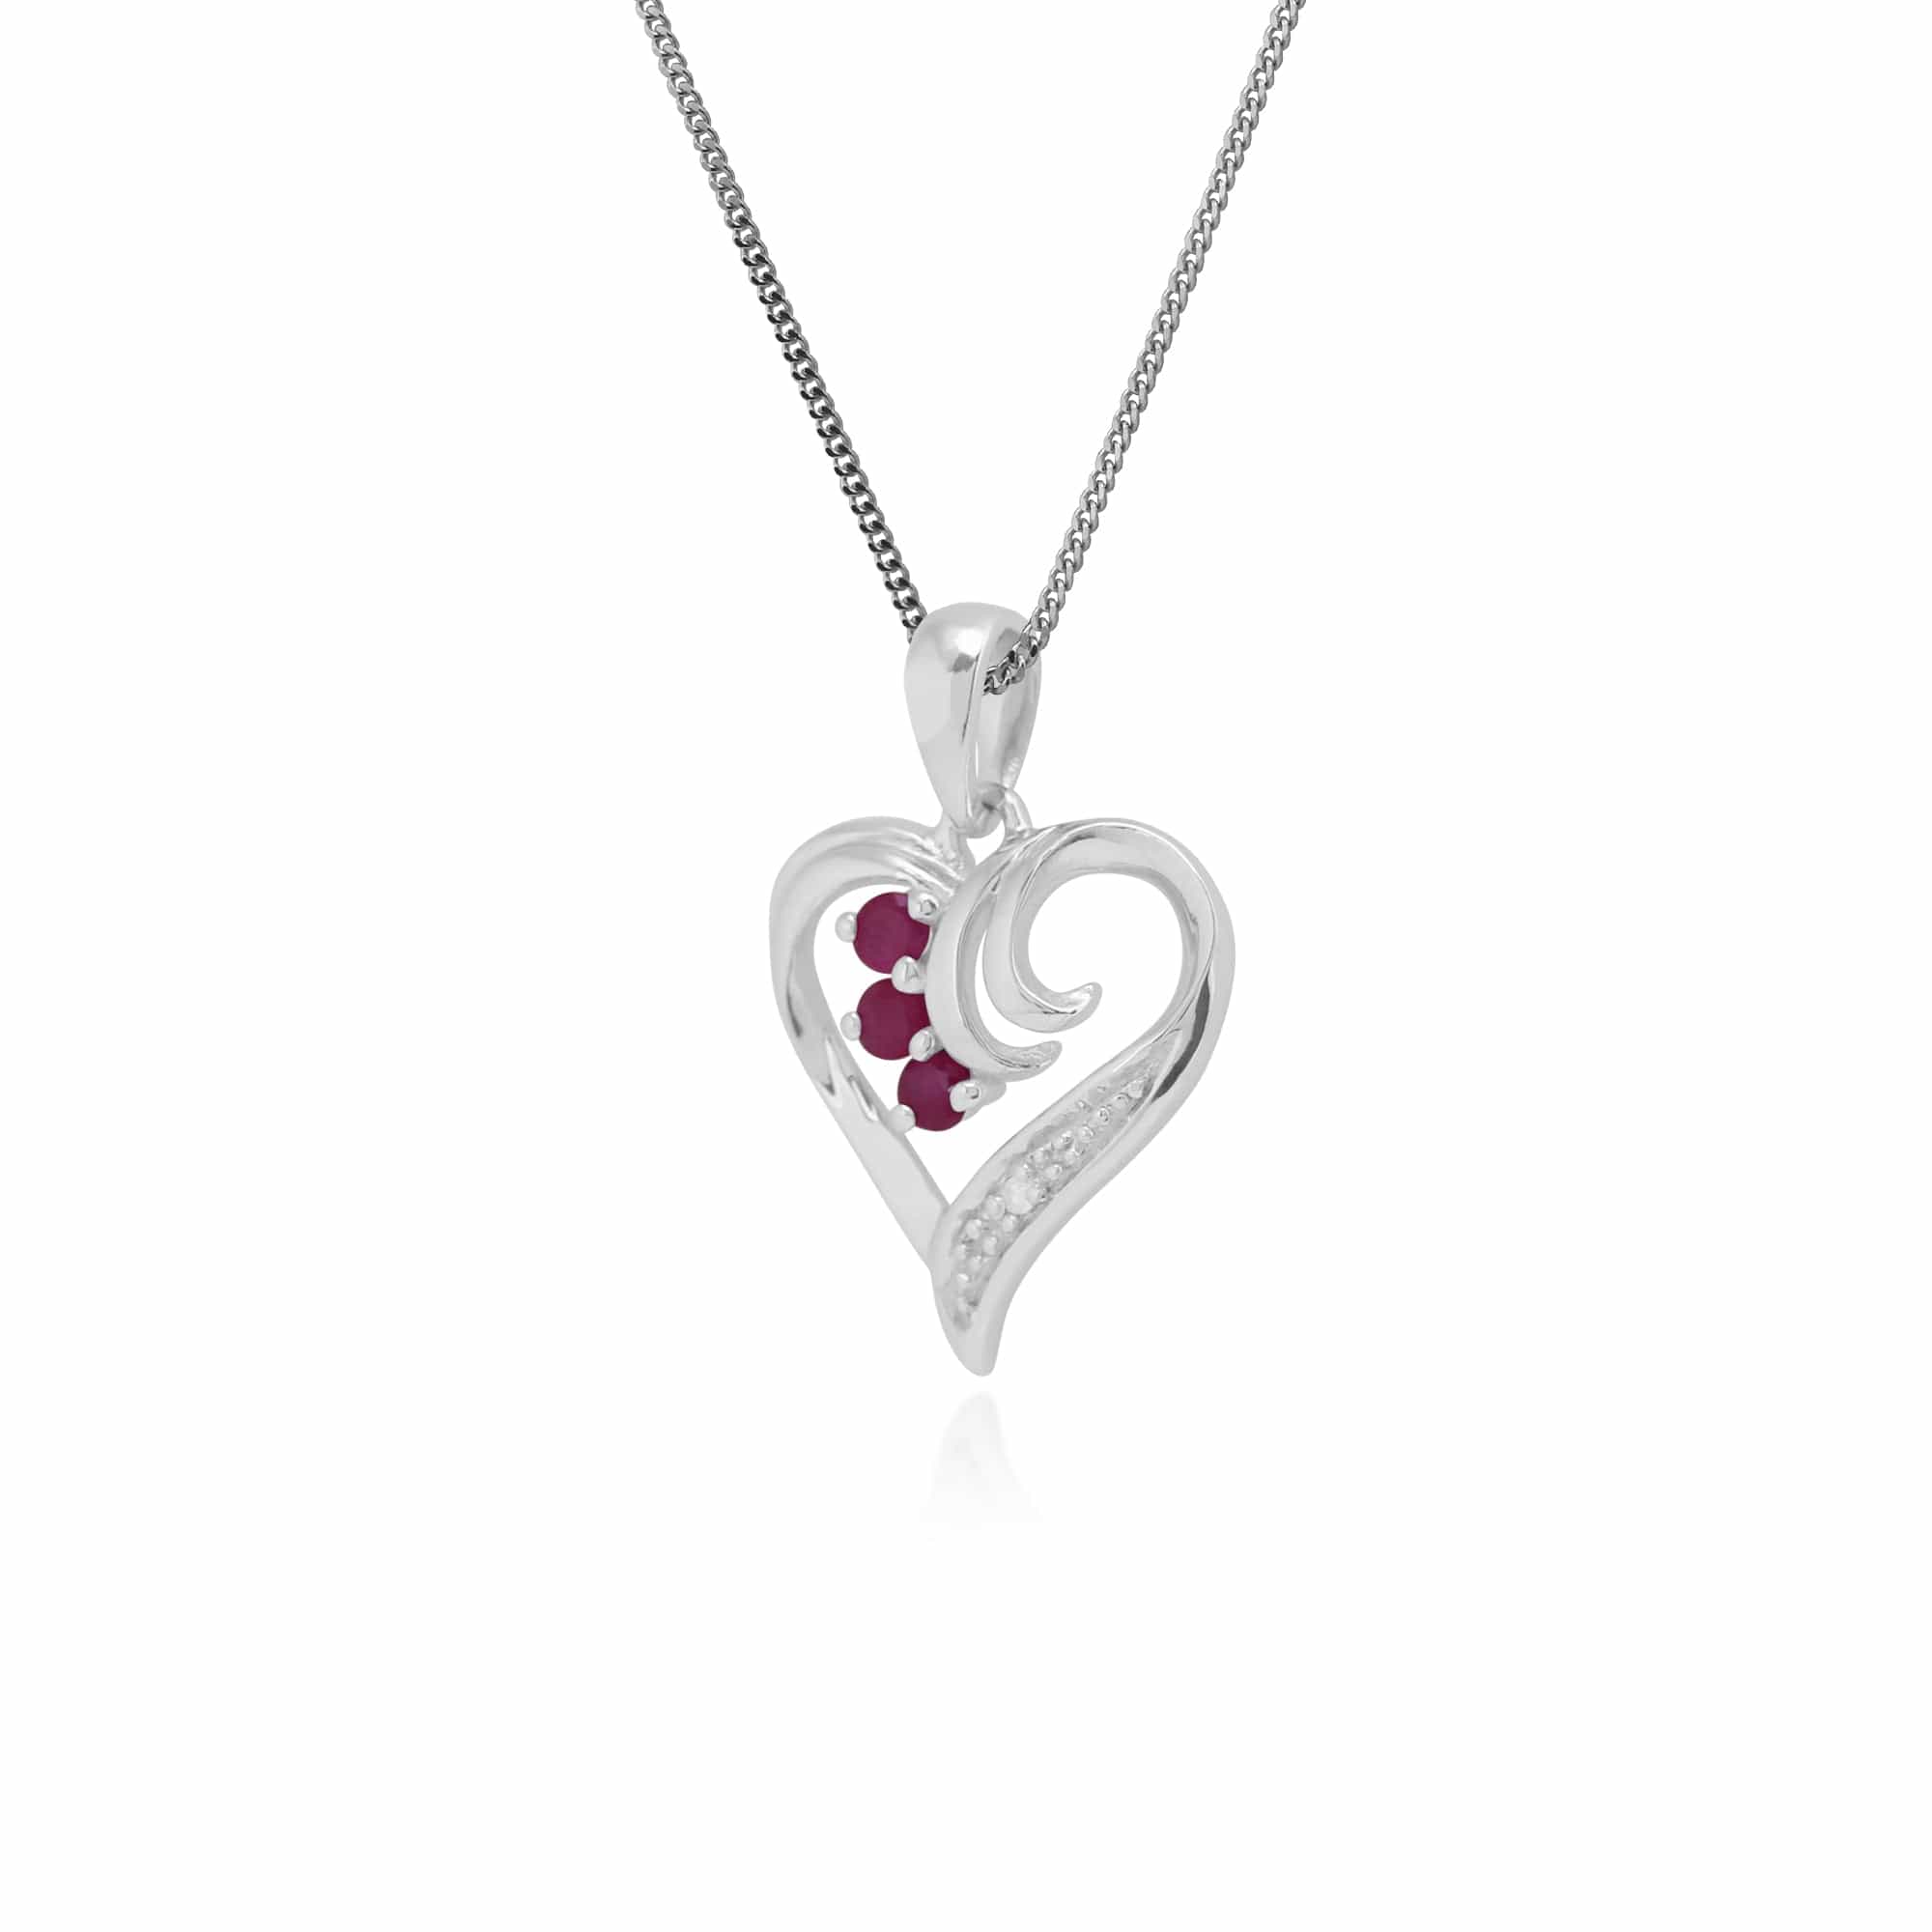 162P0155019 Classic Round Ruby & Diamond Swirled Heart Pendant in 9ct White Gold 2